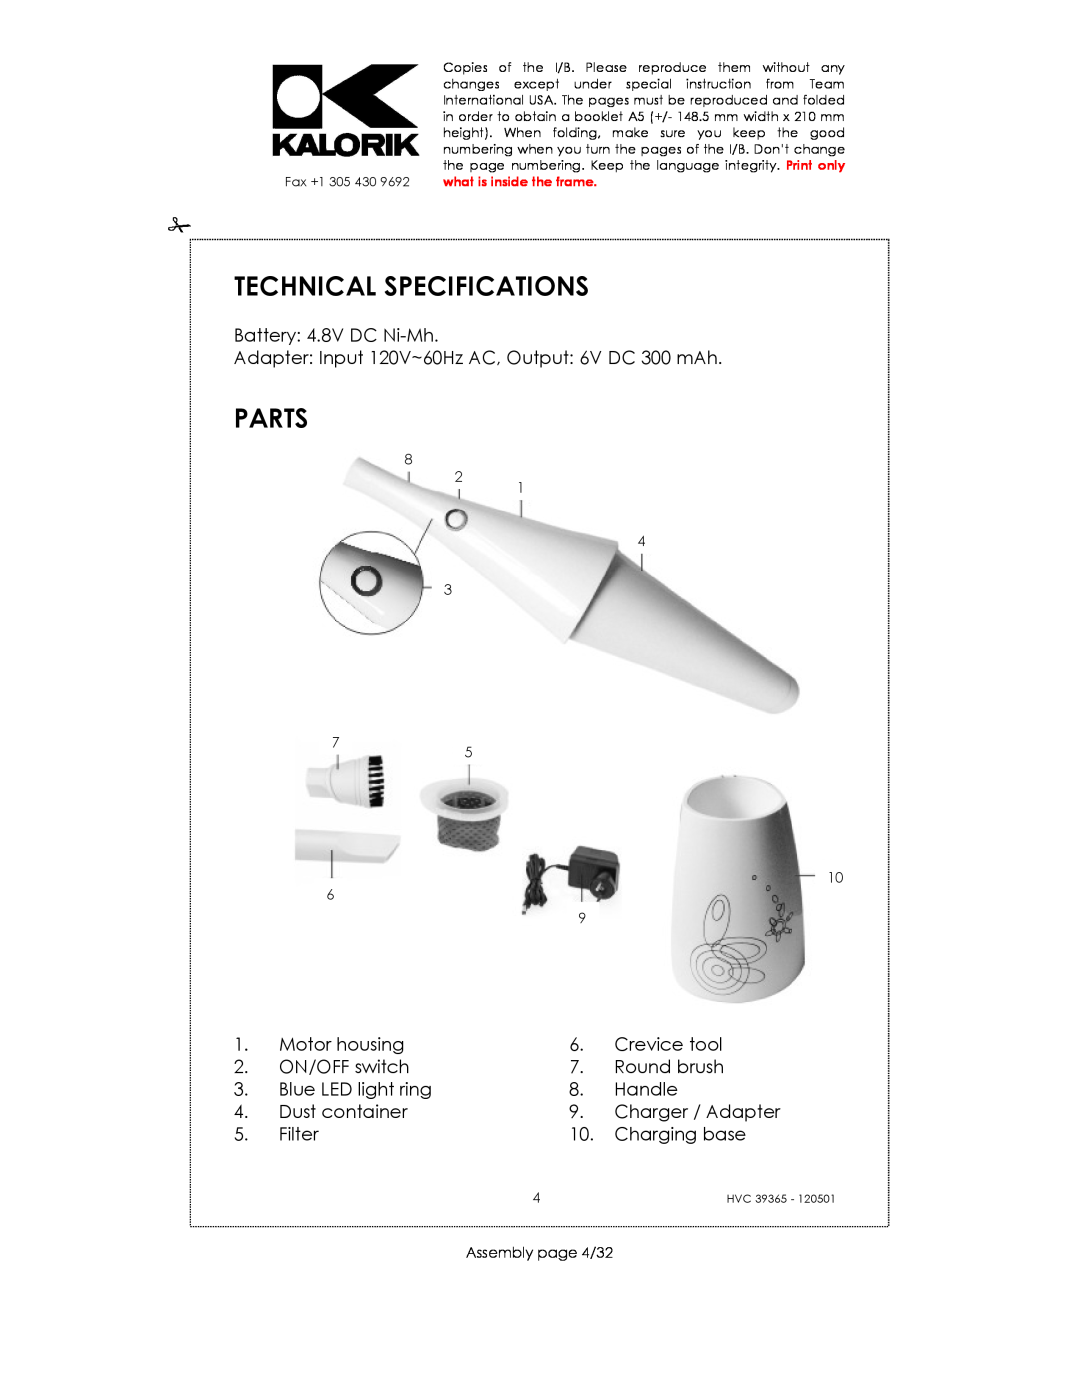 Kalorik HVC 39365 manual Technical Specifications, Parts 